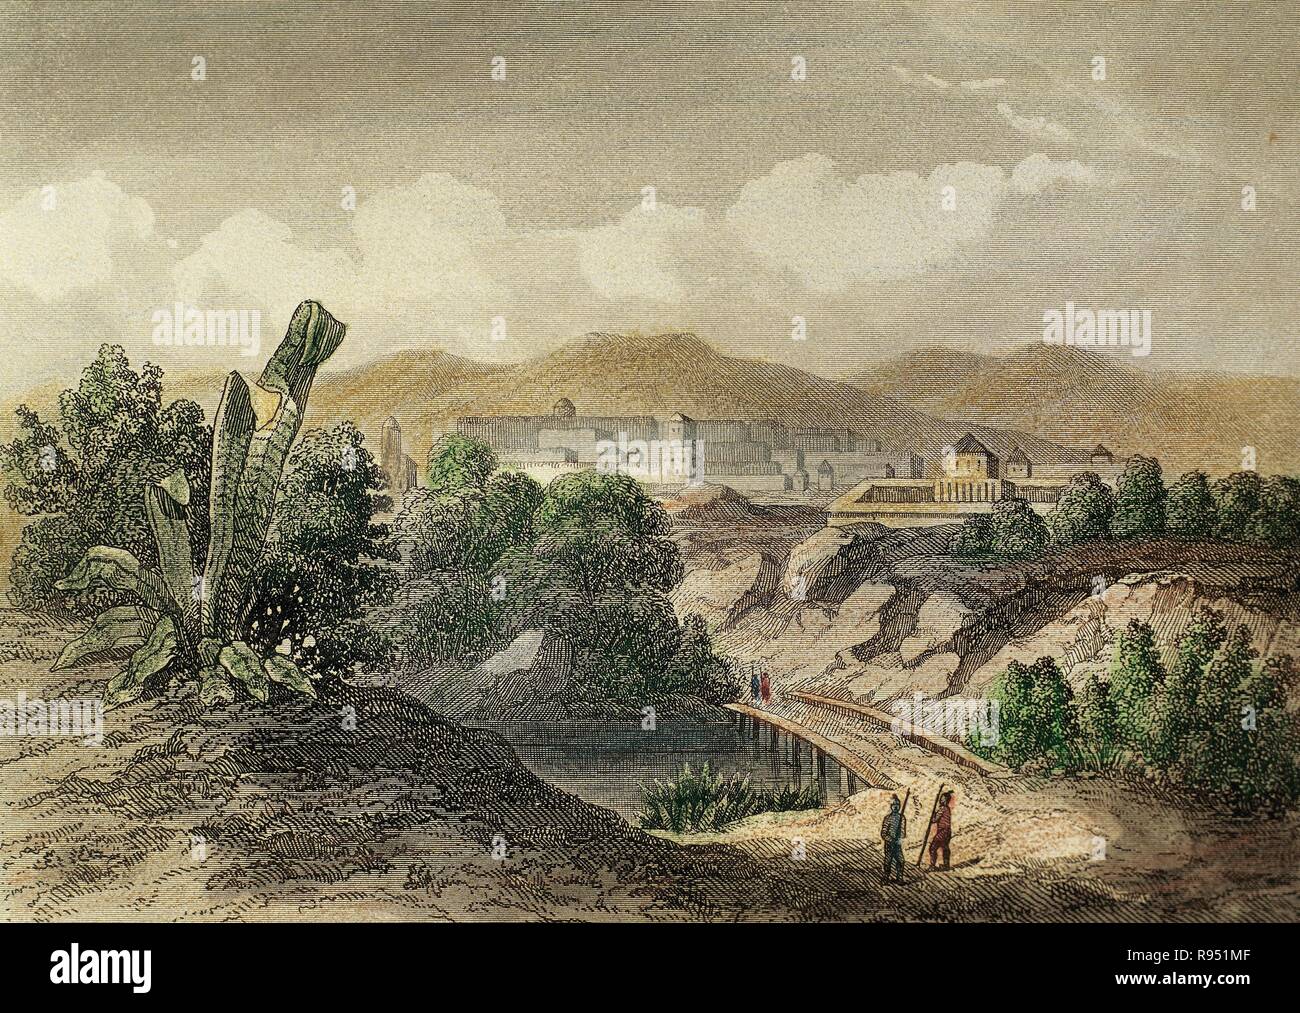 PERU. CUZCO. Ciudad fundada el 15 de noviembre de 1533 por Francisco Pizarro. La denominó Ciudad Noble y Grande y fue capital del Imperio Inca. Grabado del año 1850. Stock Photo